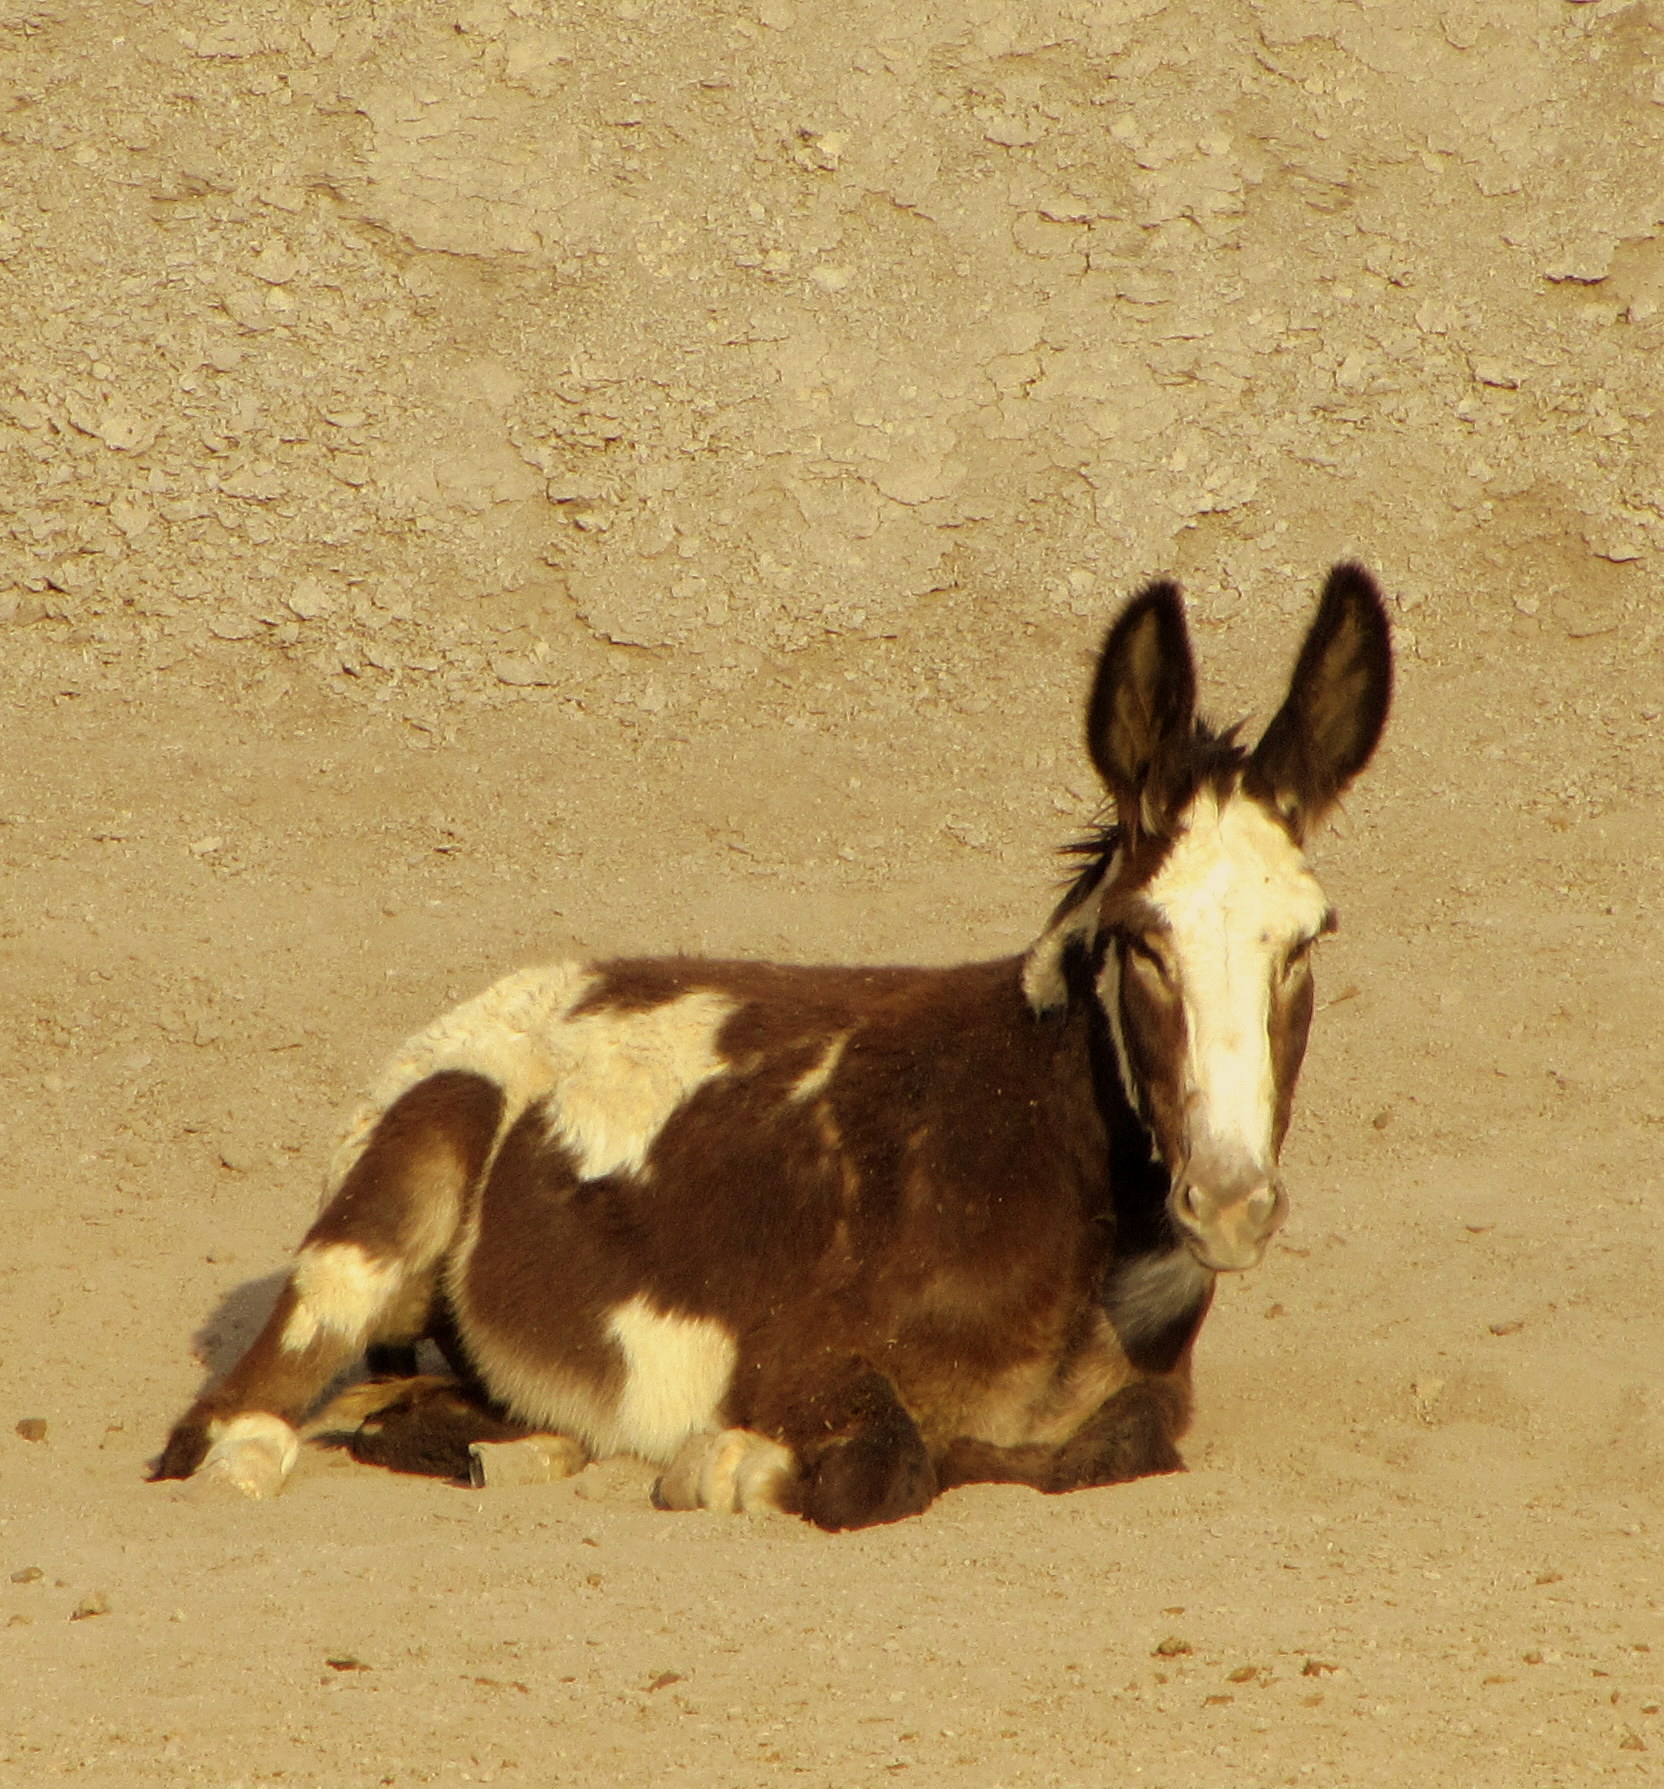 Terlingua burro